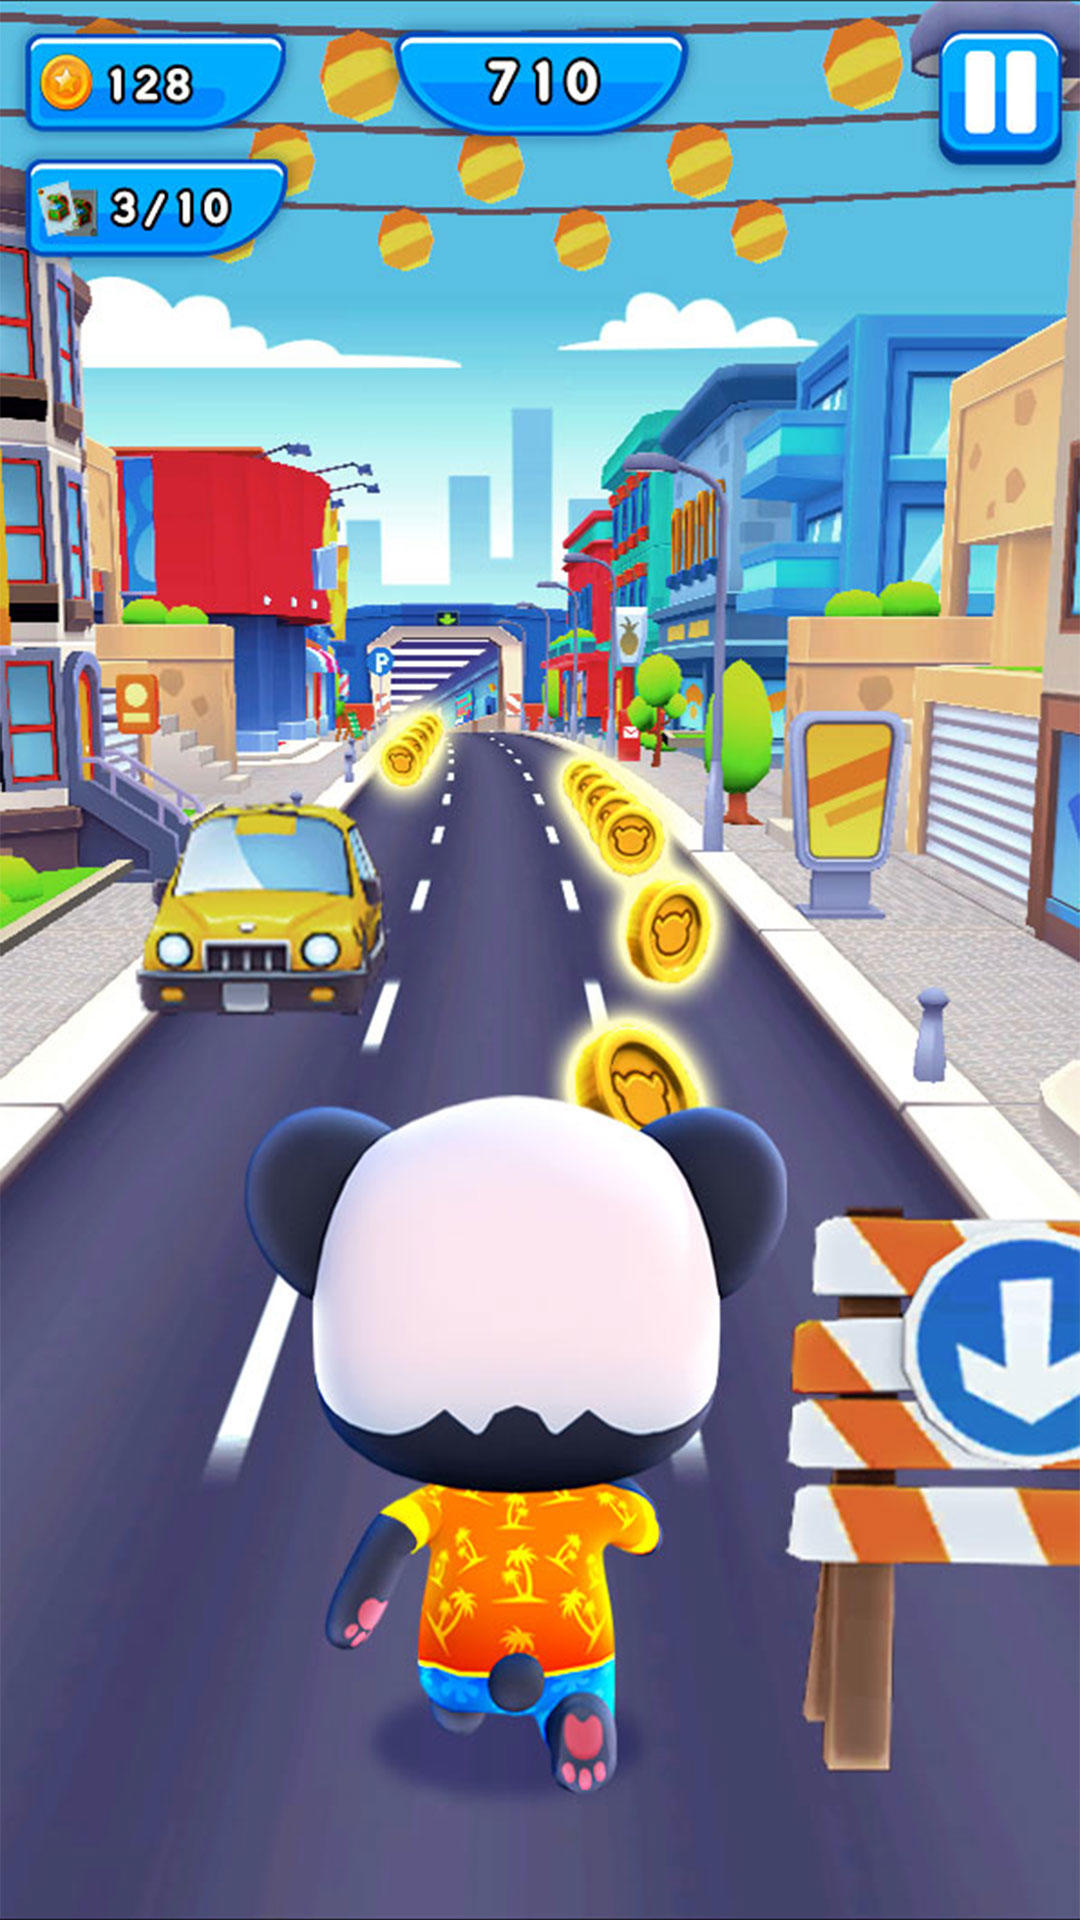 Screenshot 1 of Panda Panda Runner Game 1.9.2